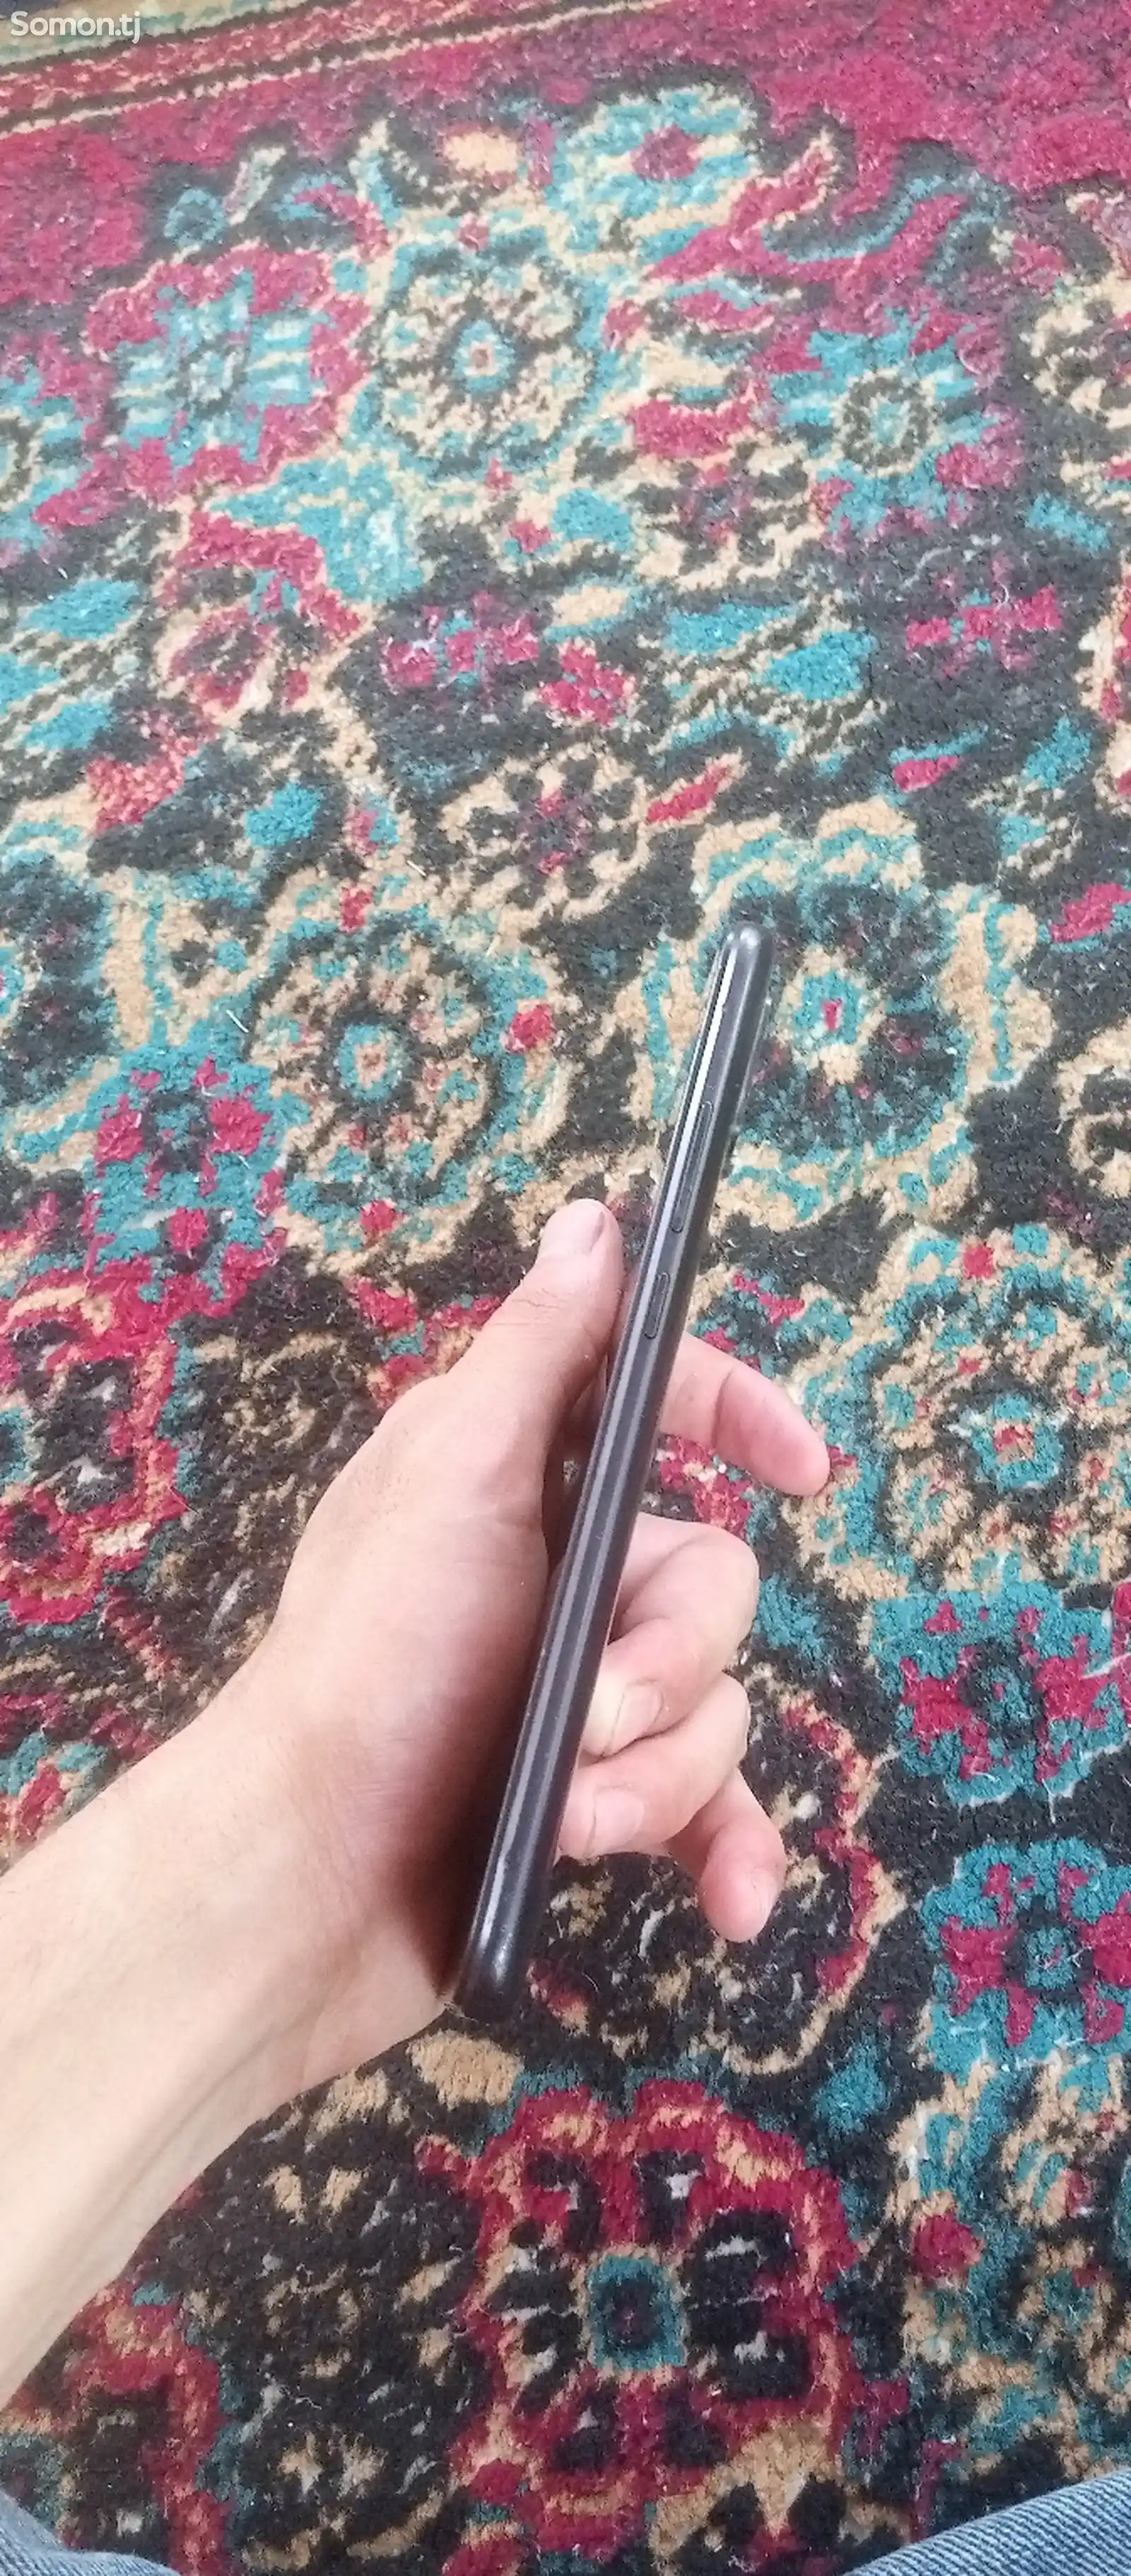 Xiaomi Redmi 9a-3